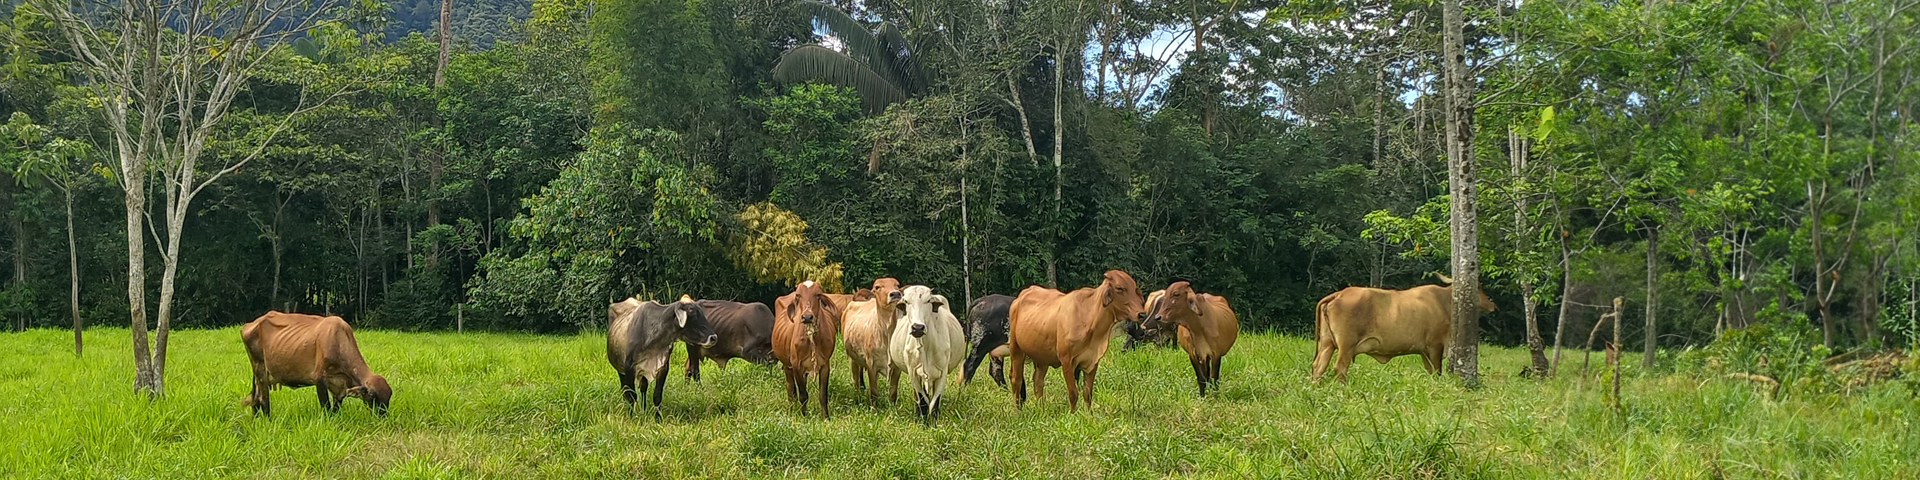 Unas vacas pastan en un prado verde junto a un bosque.